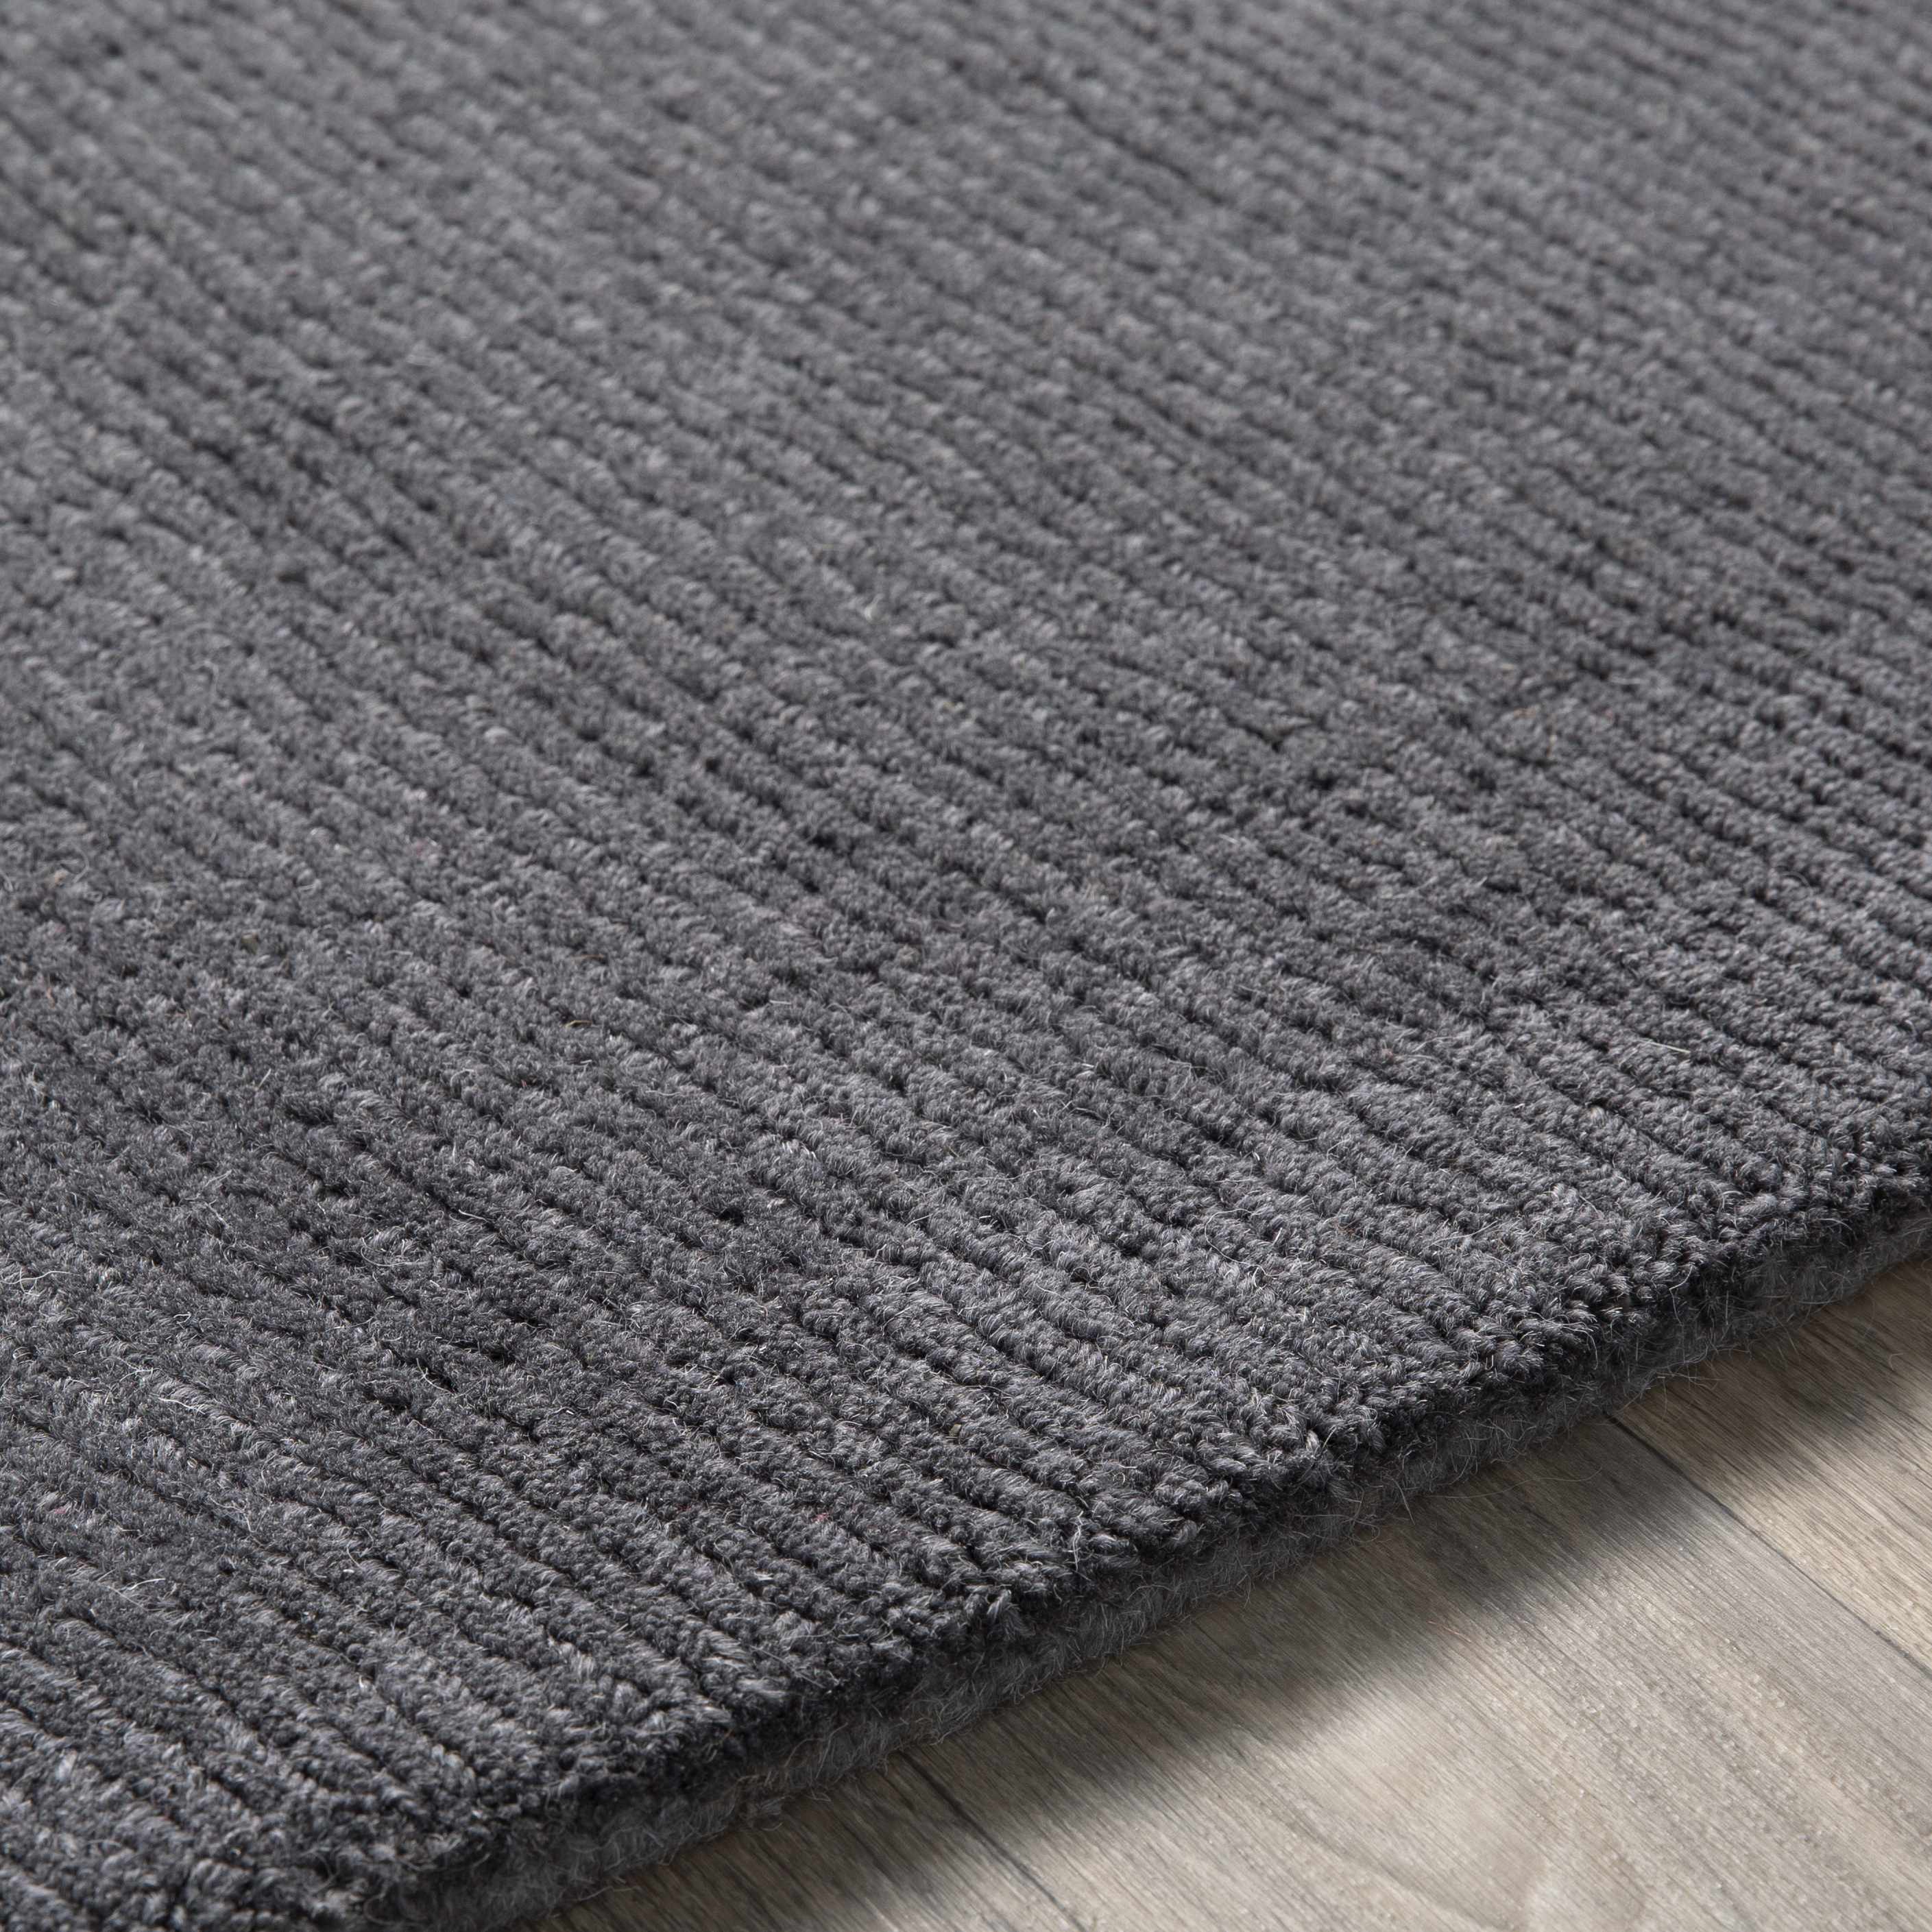 Brockton Solid Wool Charcoal Area Rug